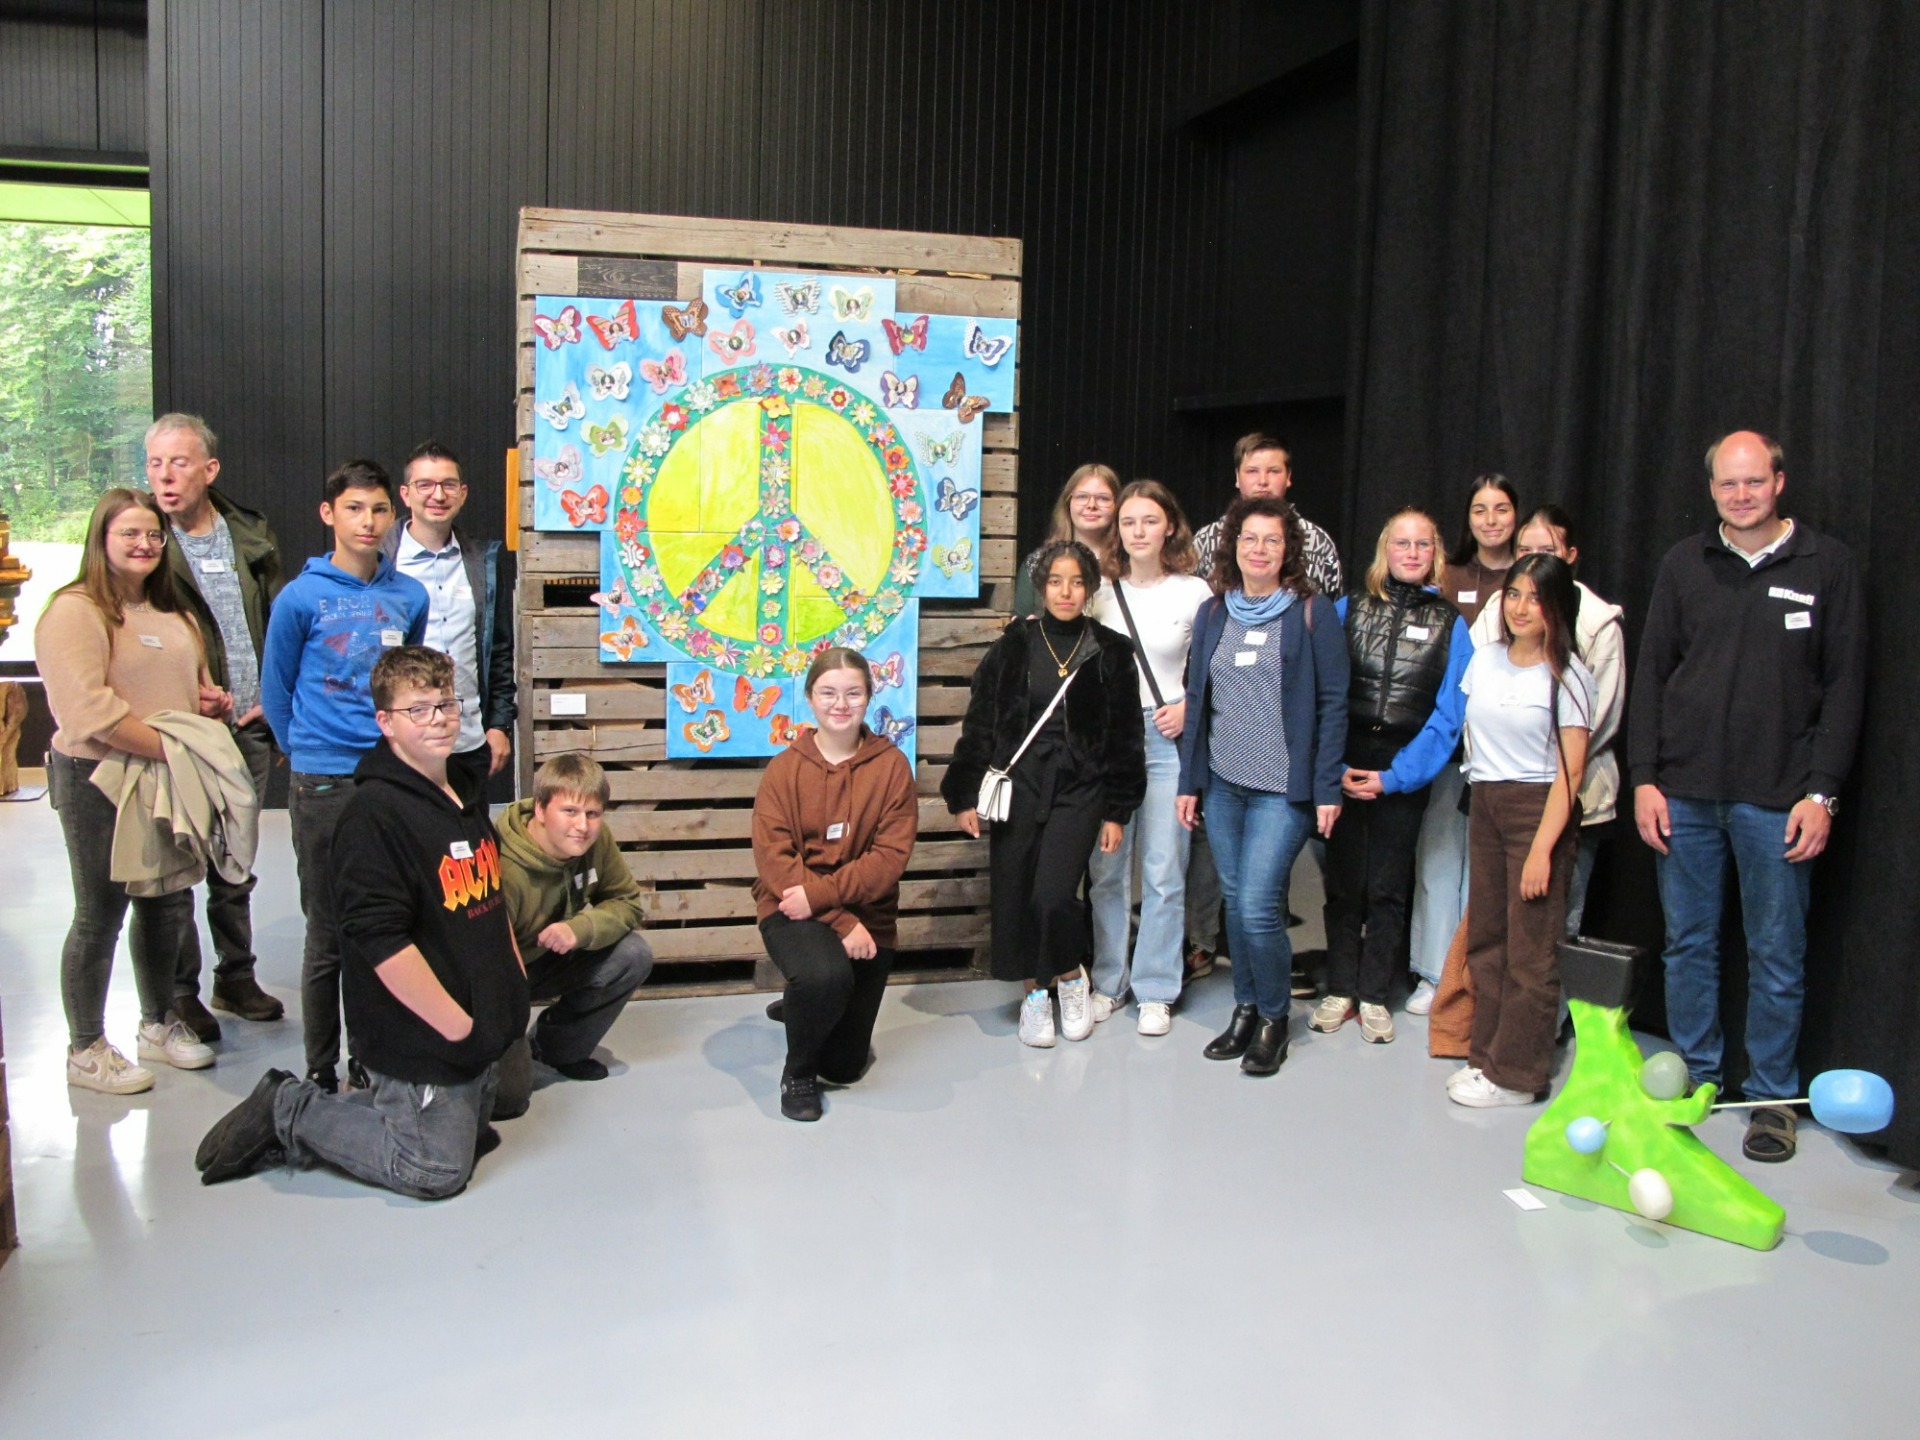 Schüler:innen und die Gruppe „Kunterbunt“ der Martinus-Oberschule Haren präsentieren Kunstinstallation im Spiekerhüs in Ter Apel - Bild 1